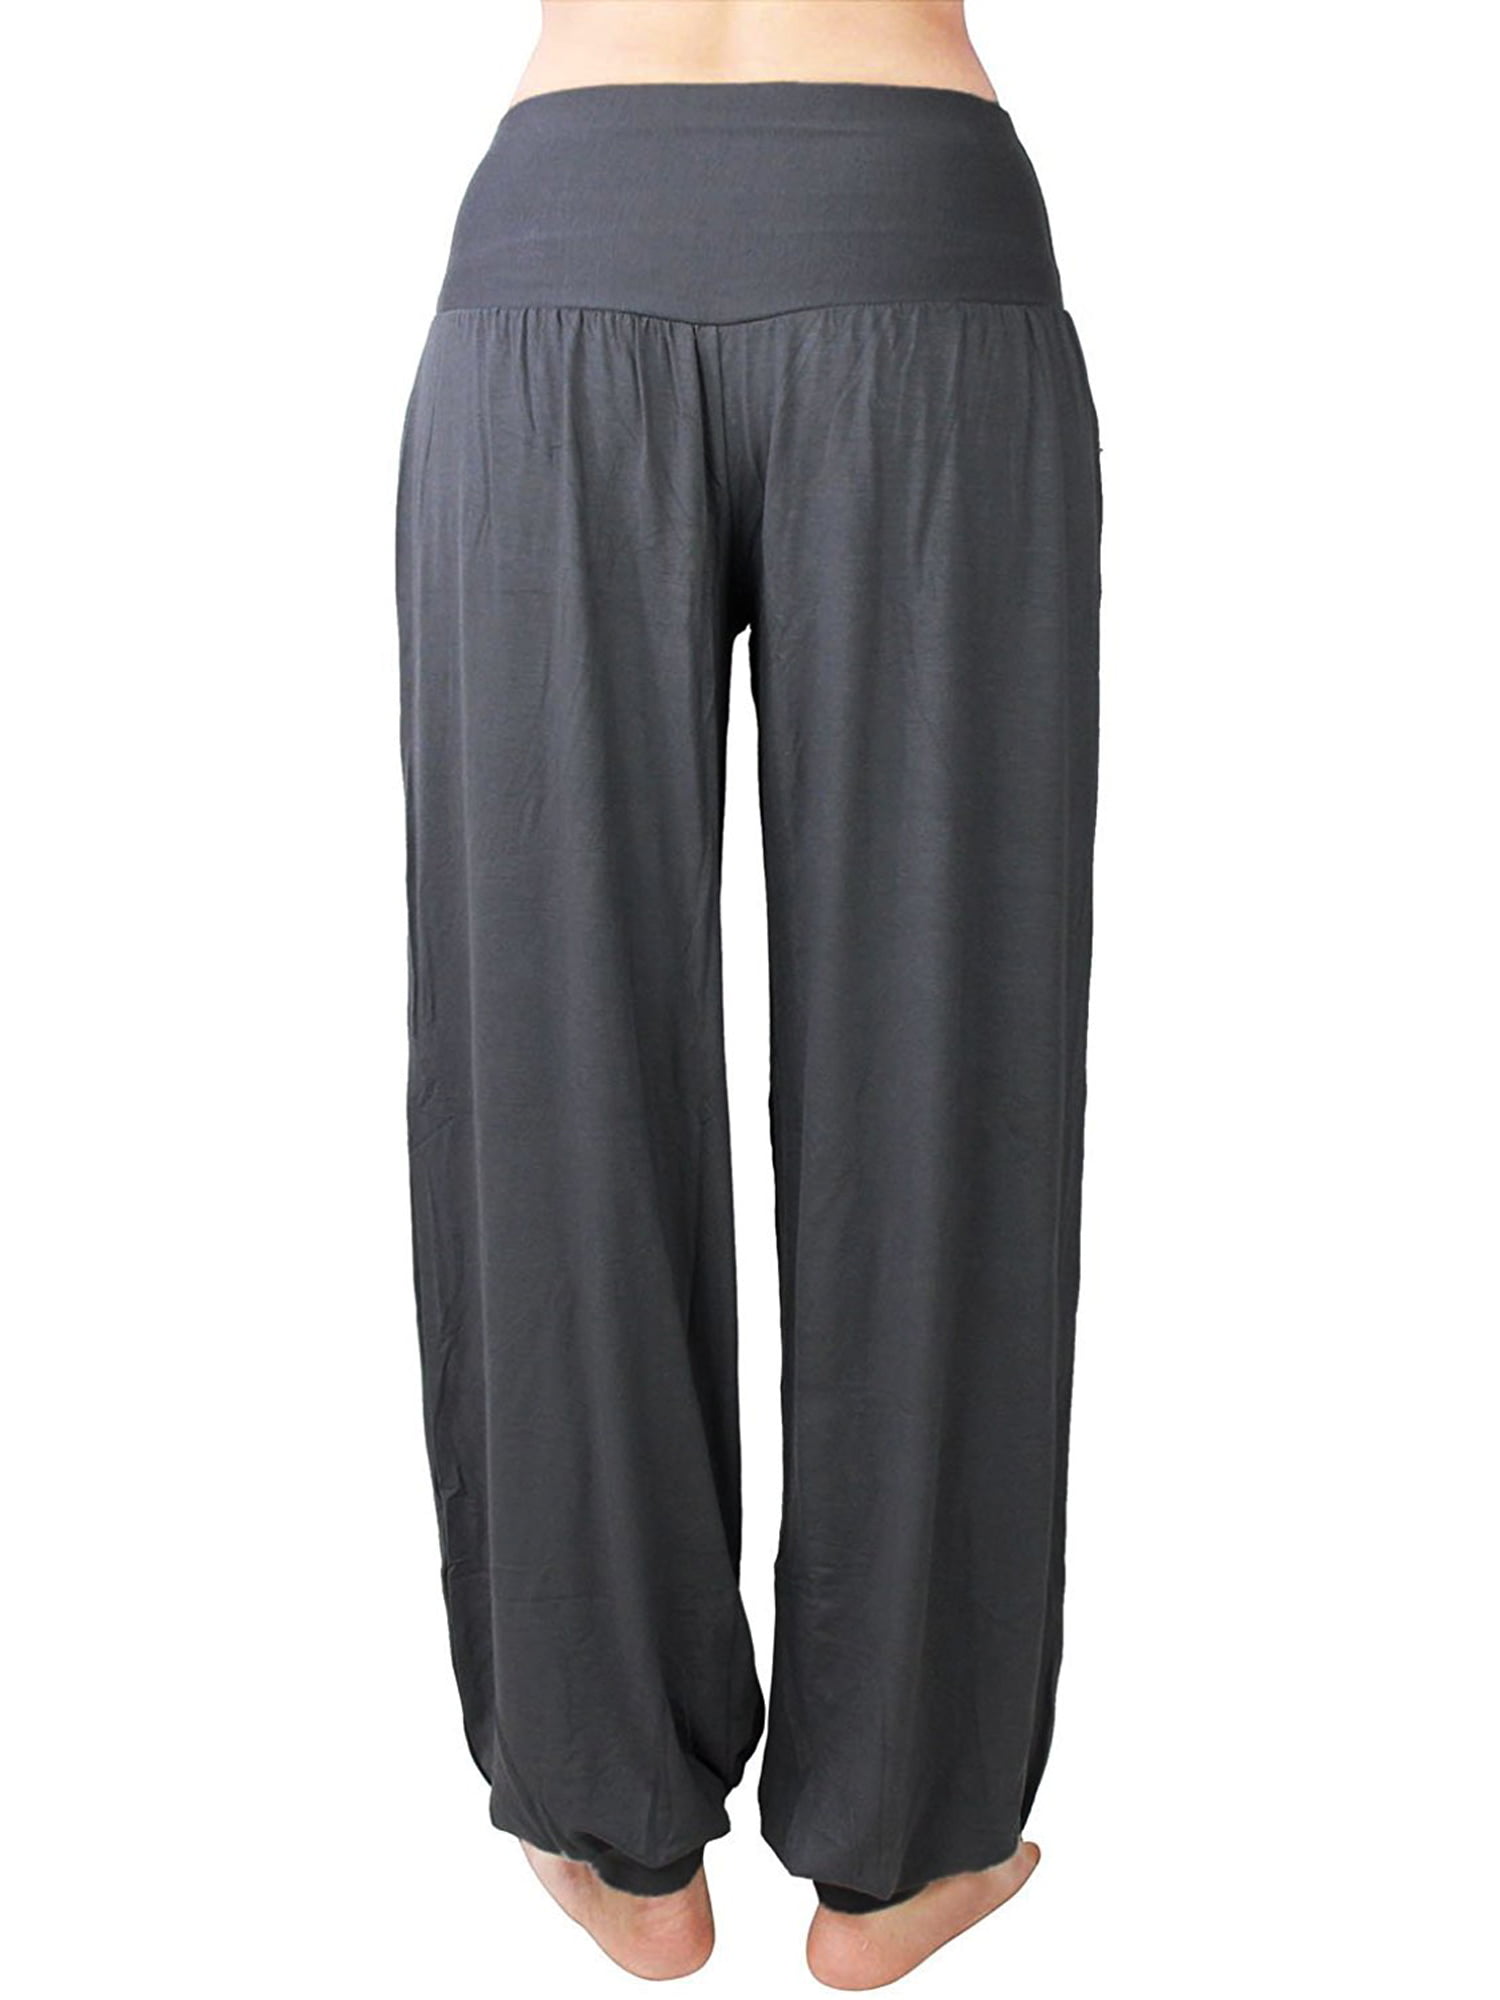 XL-2XL Plus Size Black Baggy Pants Harem Pants Womens Yoga Pants with Bow  Tie Sash Belt - LaFactory